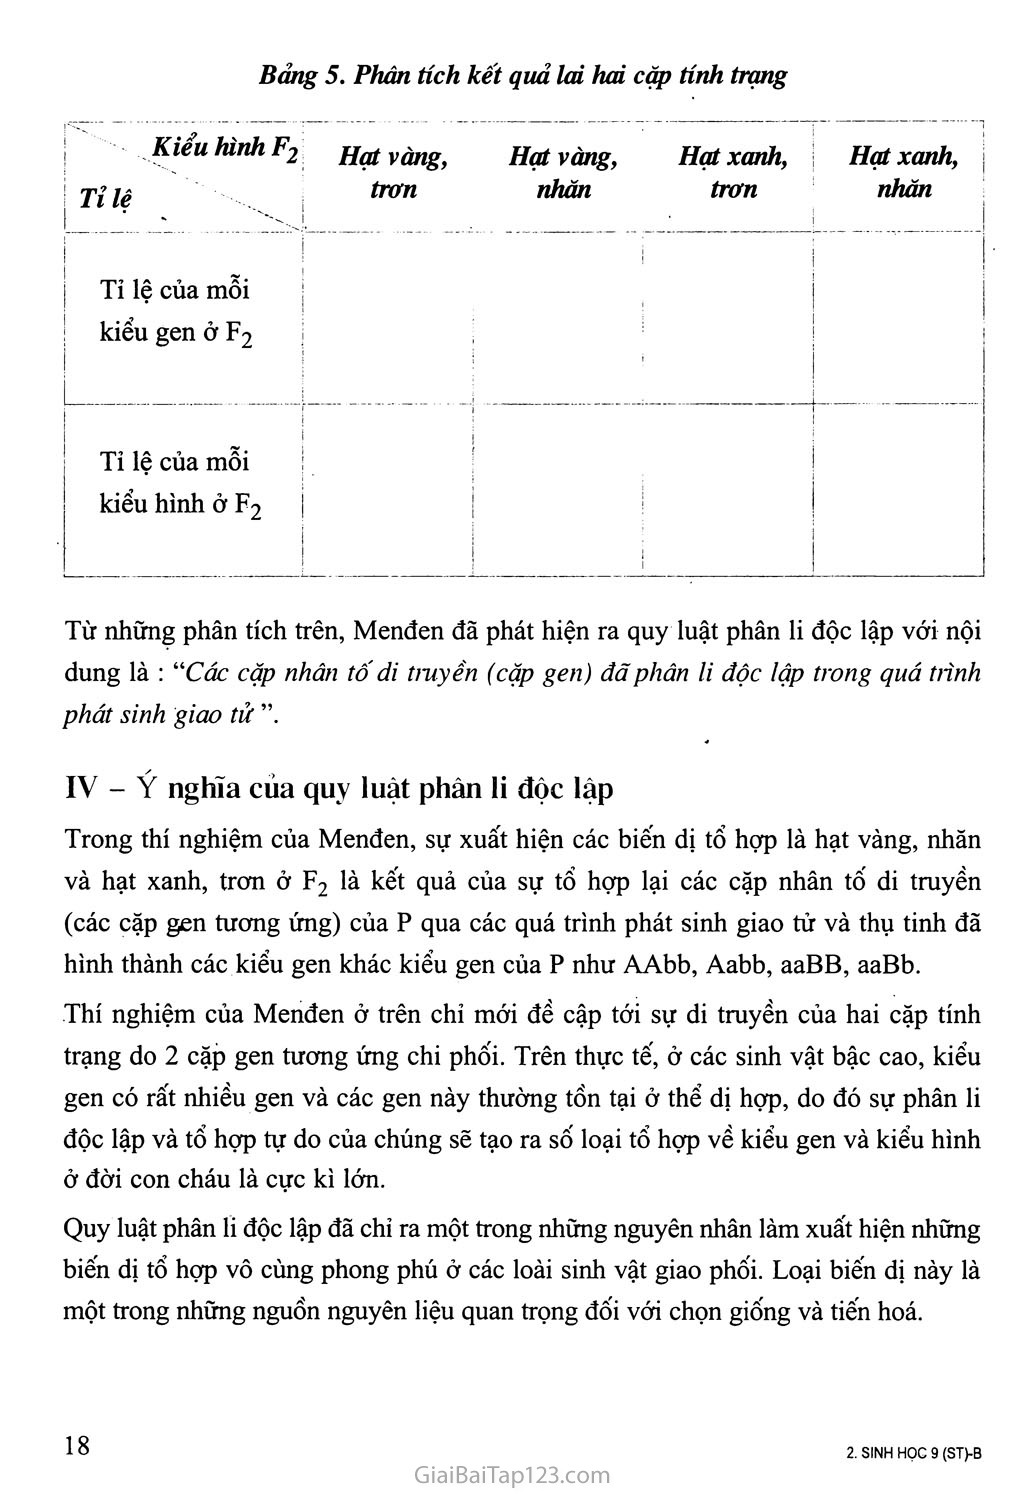 Bài 5. Lai hai cặp tính trạng (tiếp theo) trang 2